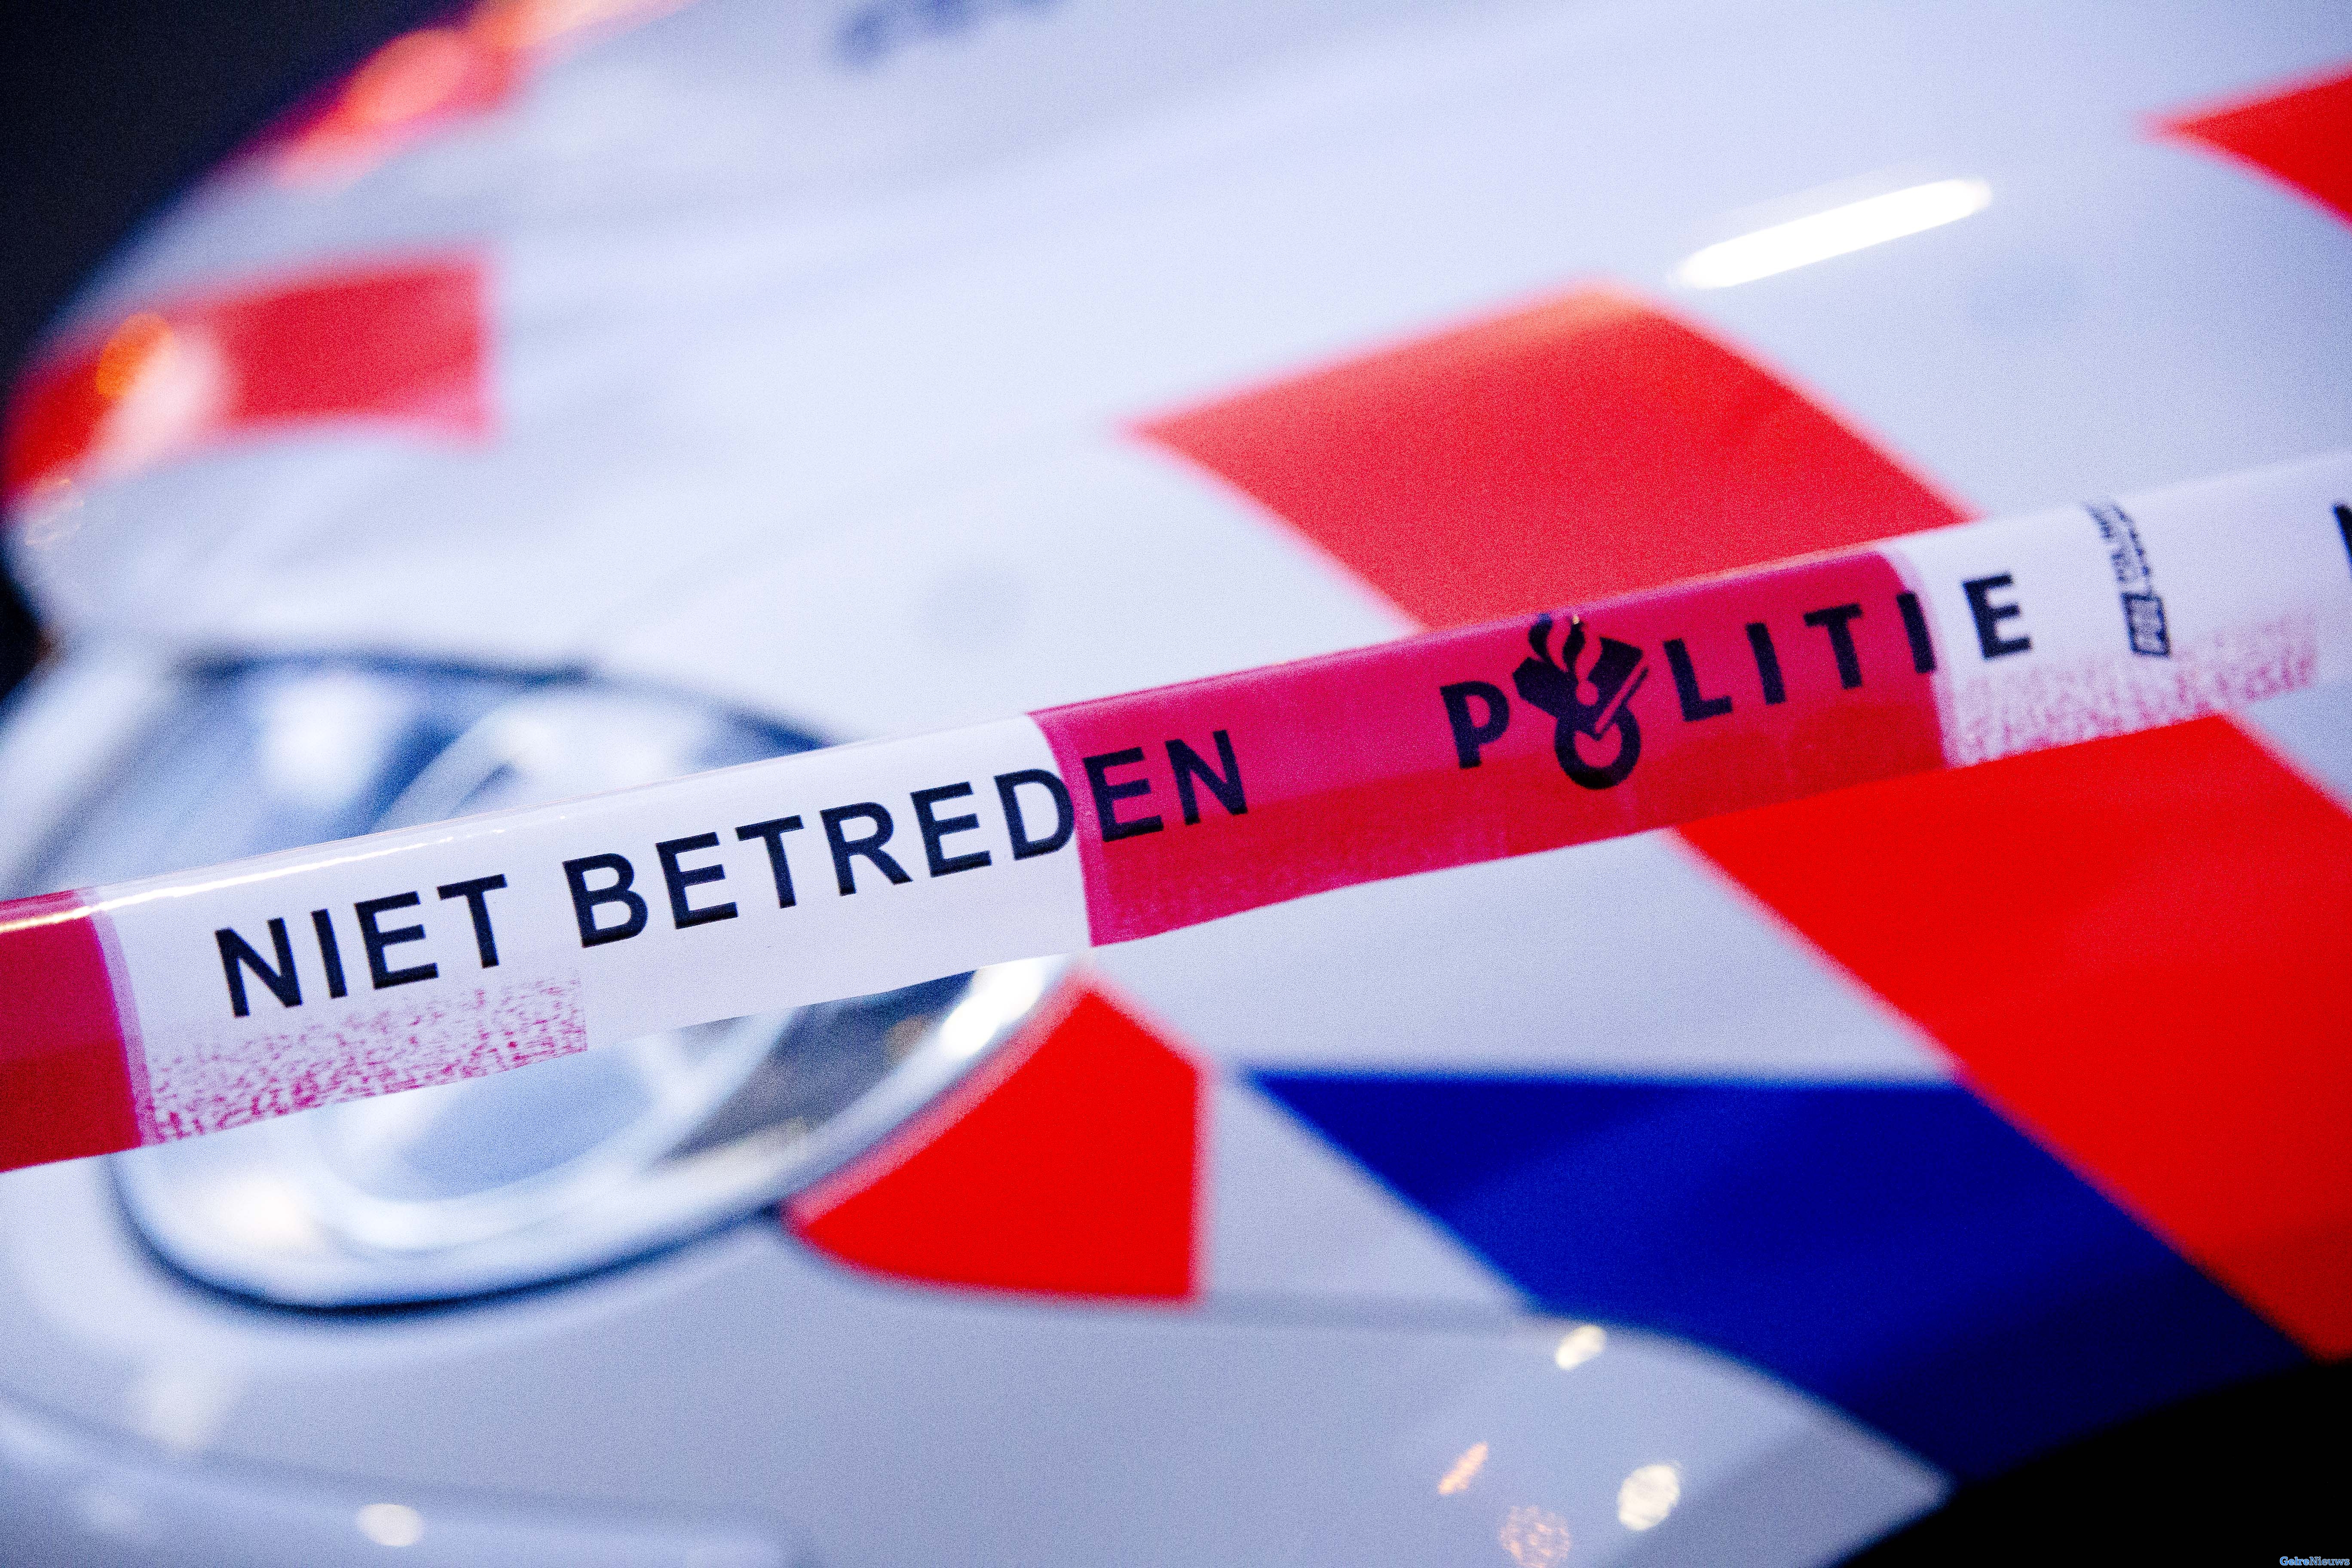 Twee mannen opgepakt voor poging doodslag in Apeldoorn